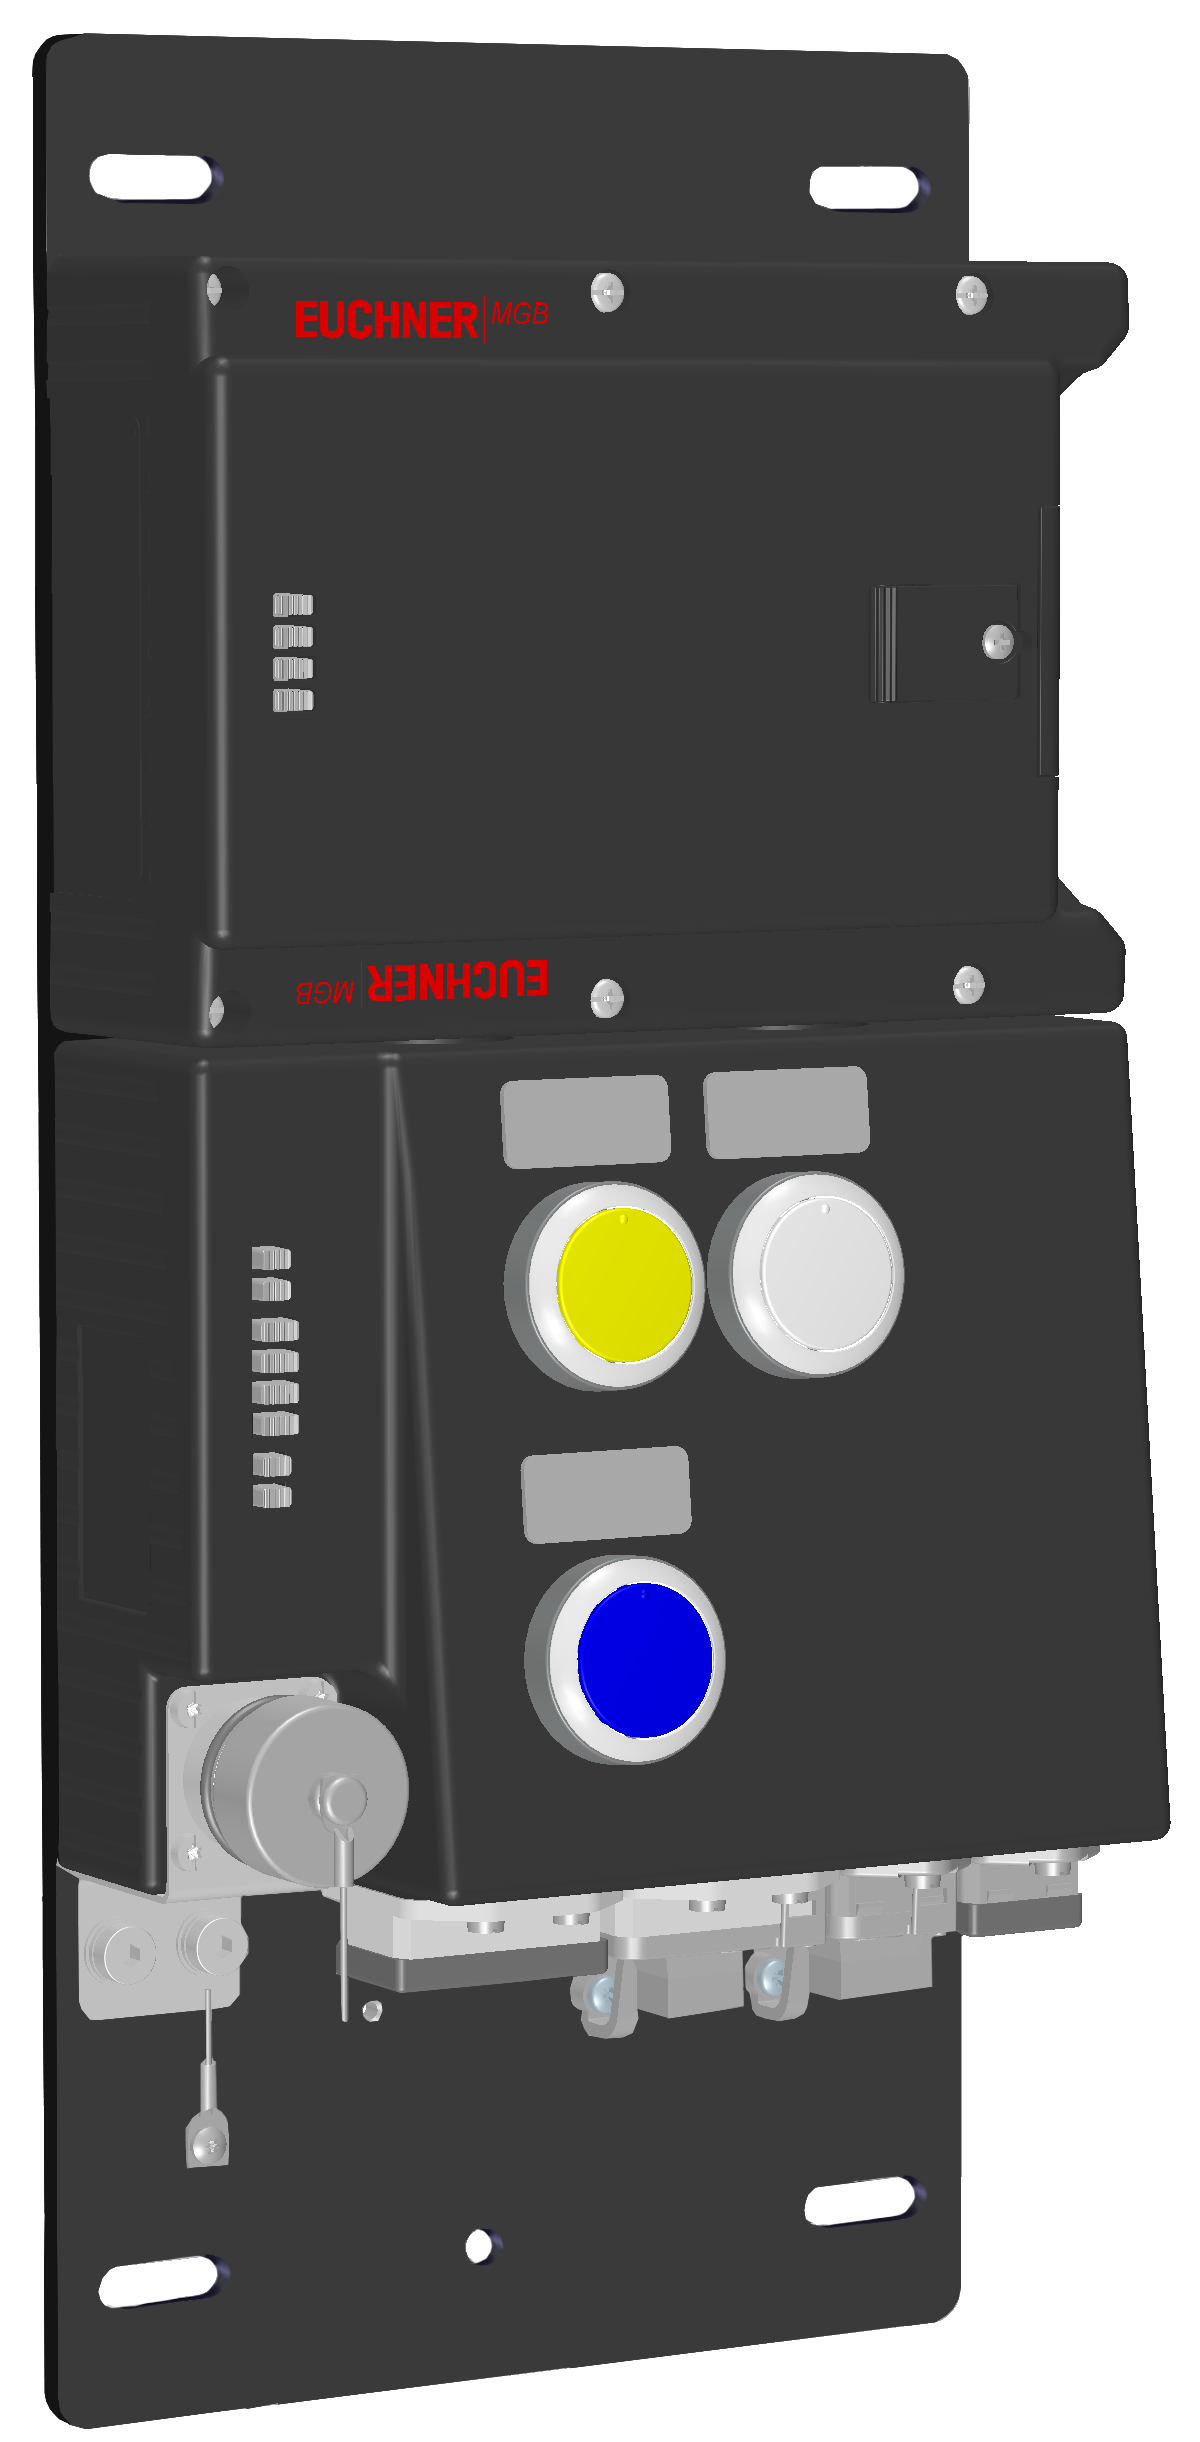 Vyhodnocovací moduly s jištěním ochranného krytu MGB-L1B-PNC-R-115419  (Obj. č. 115419)